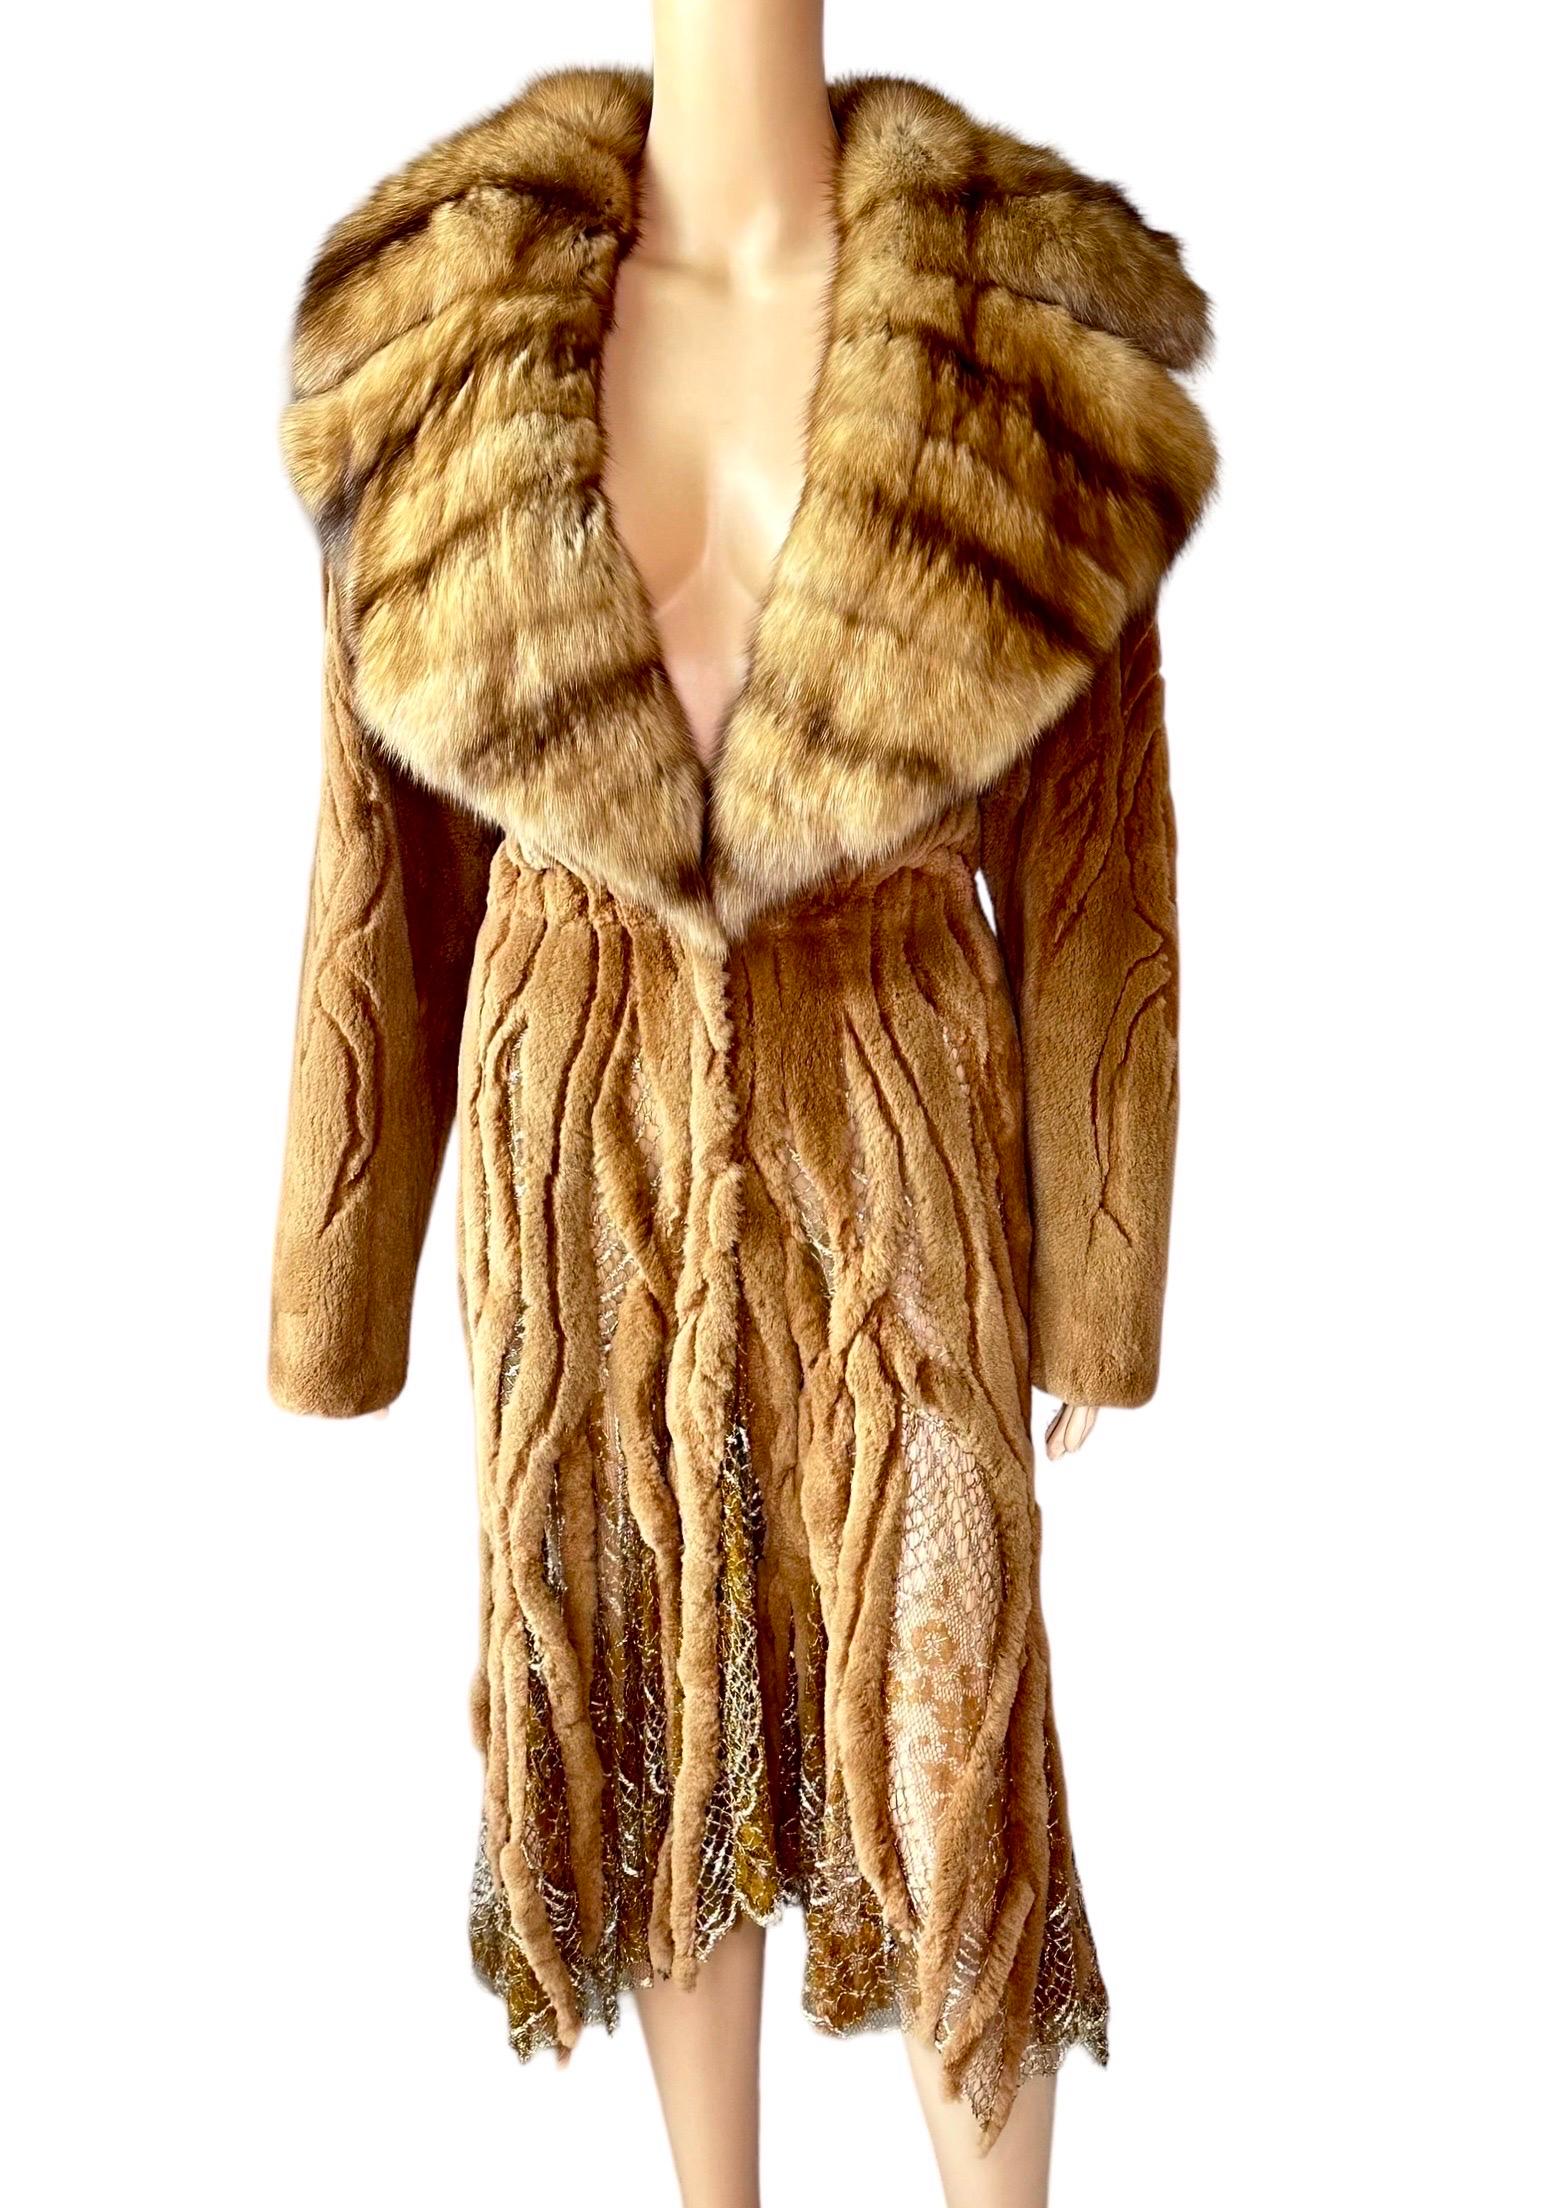 Atelier Gianni Versace c.1996 Fur Cutout Sheer Lace Mesh Panels Jacket Coat For Sale 10